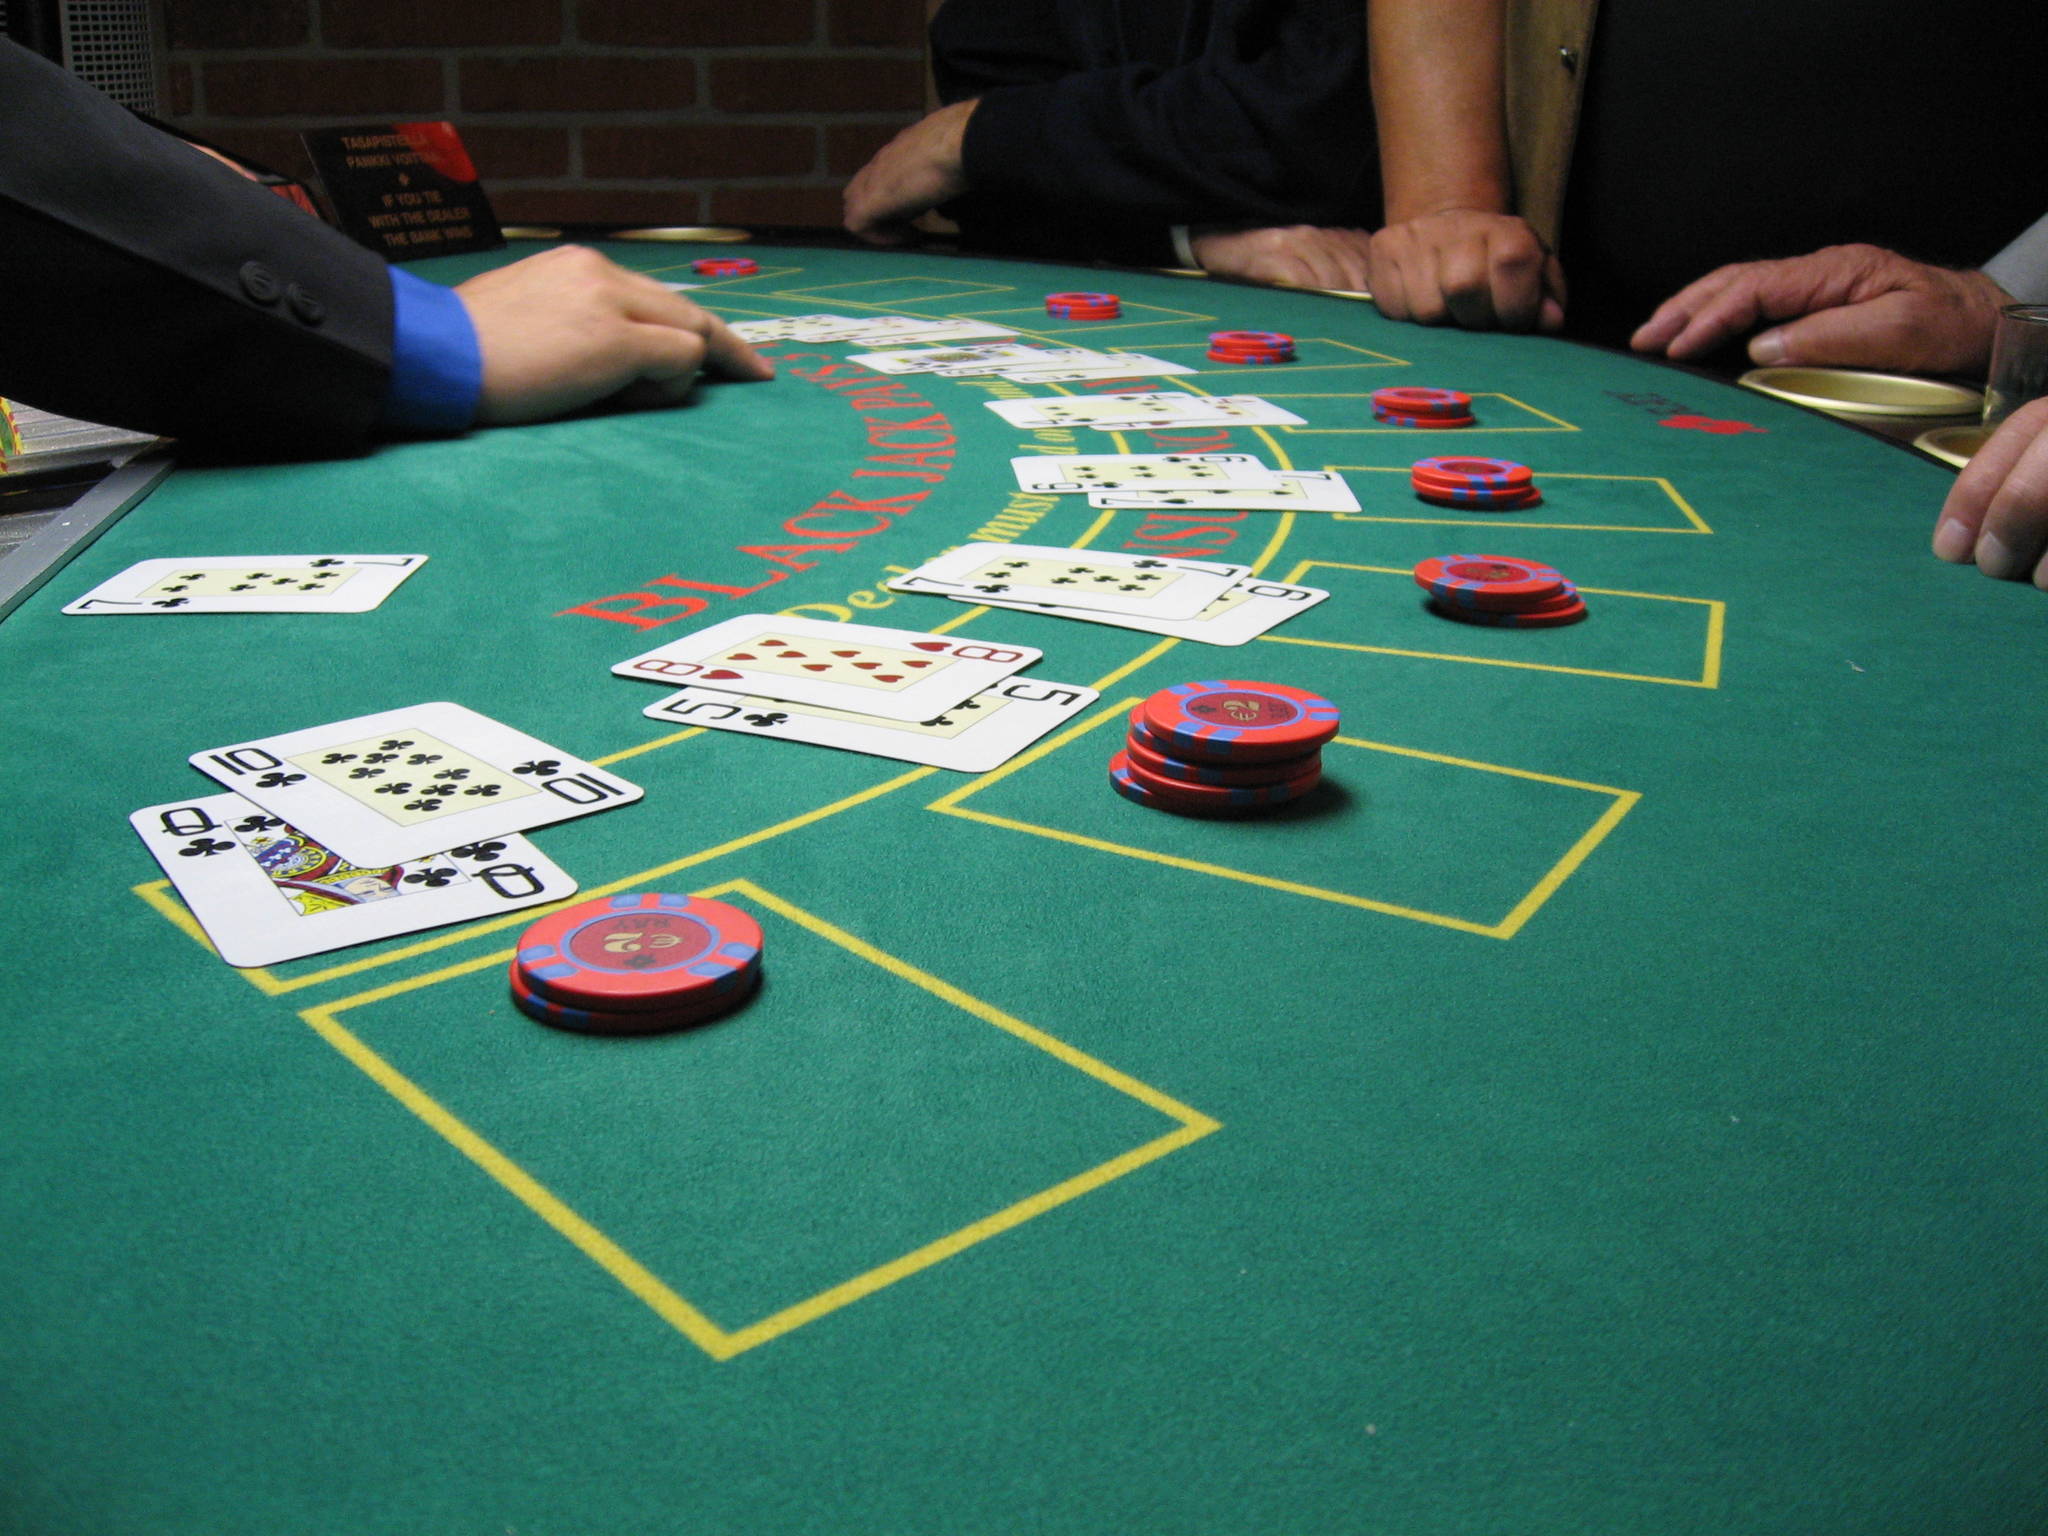 Suquamish casino dealer allegedly caught cheating